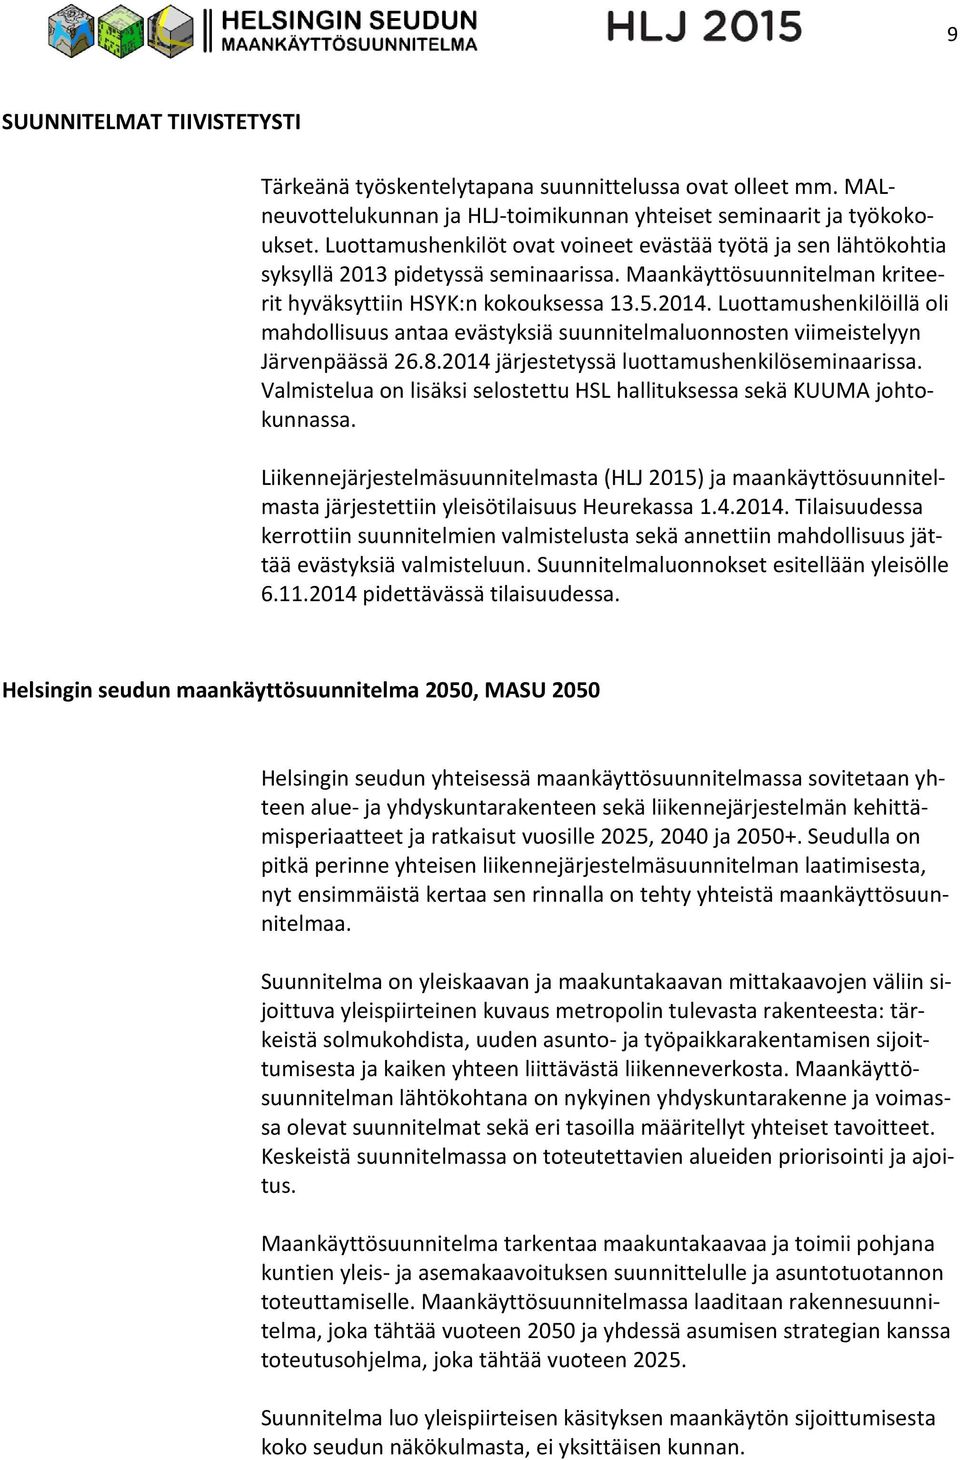 Luottamushenkilöillä oli mahdollisuus antaa evästyksiä suunnitelmaluonnosten viimeistelyyn Järvenpäässä 26.8.2014 järjestetyssä luottamushenkilöseminaarissa.